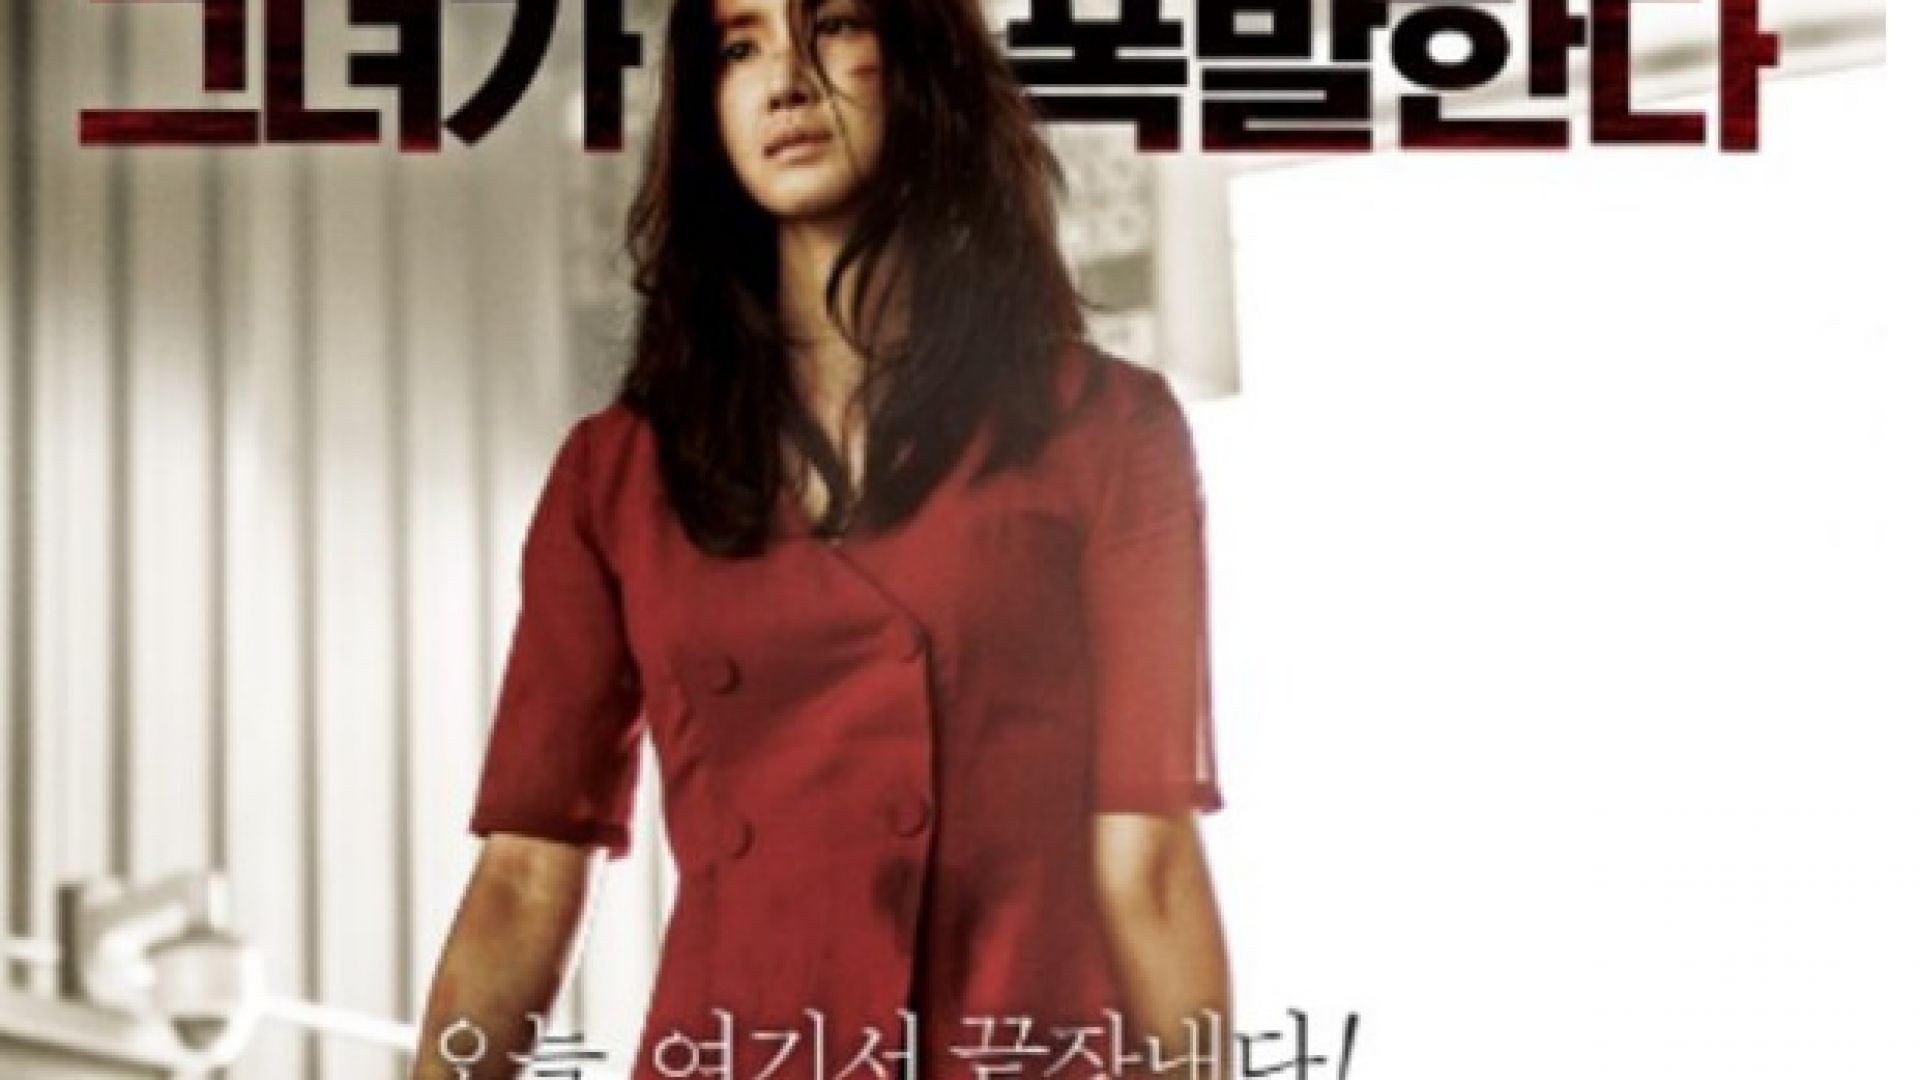 Film Action Korea Seru Wanita Tangguh | Film Korea Terbaru 2021 sub indo [ FULL HD ]